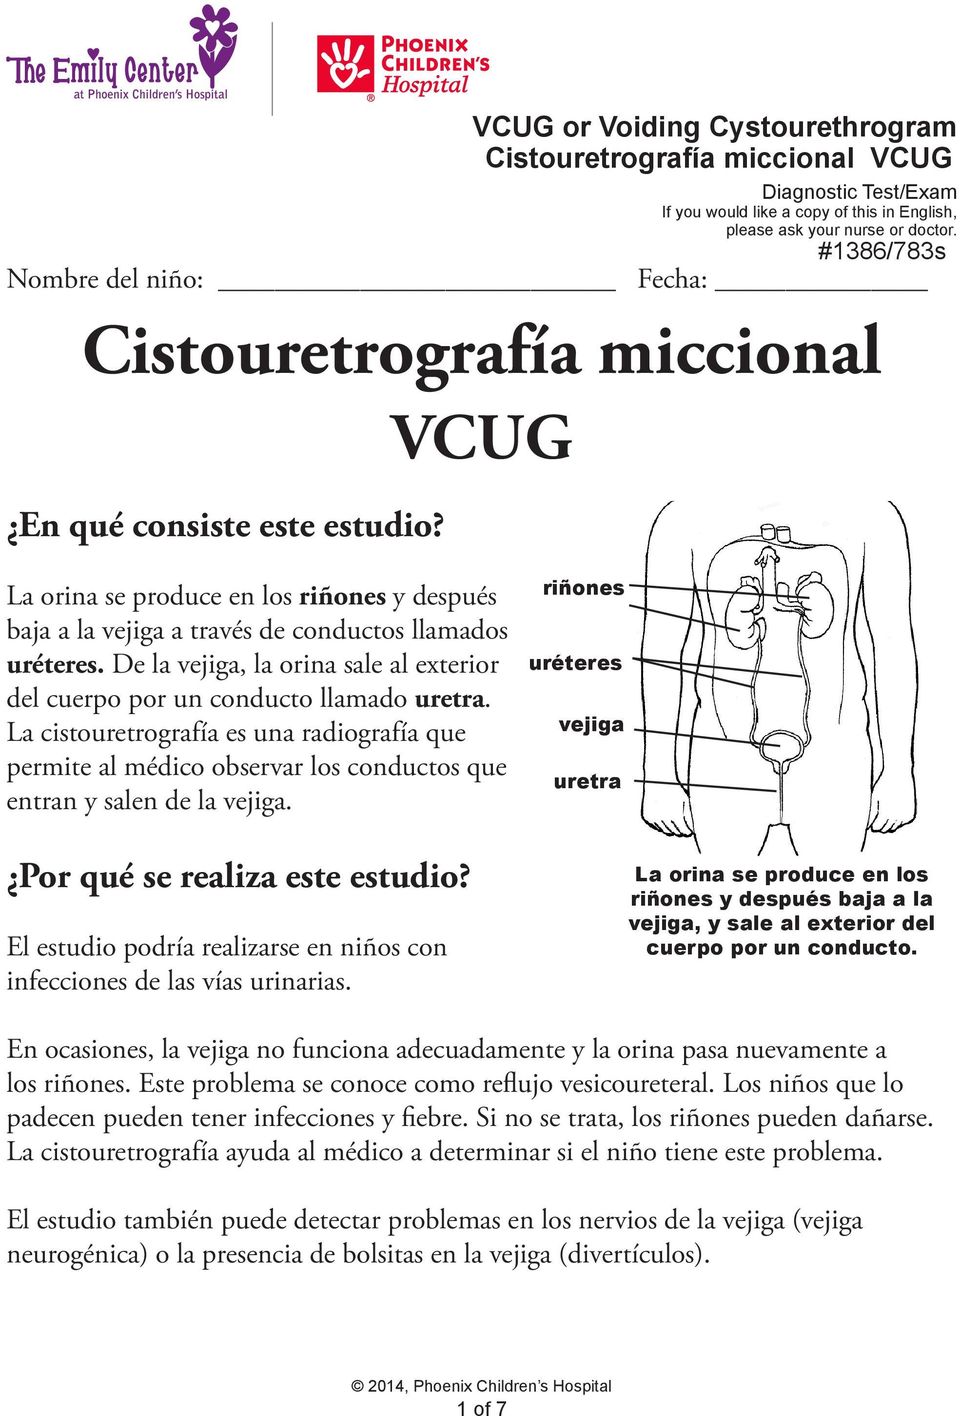 De la vejiga, la orina sale al exterior del cuerpo por un conducto llamado uretra. La cistouretrografía es una radiografía que permite al médico observar los conductos que entran y salen de la vejiga.